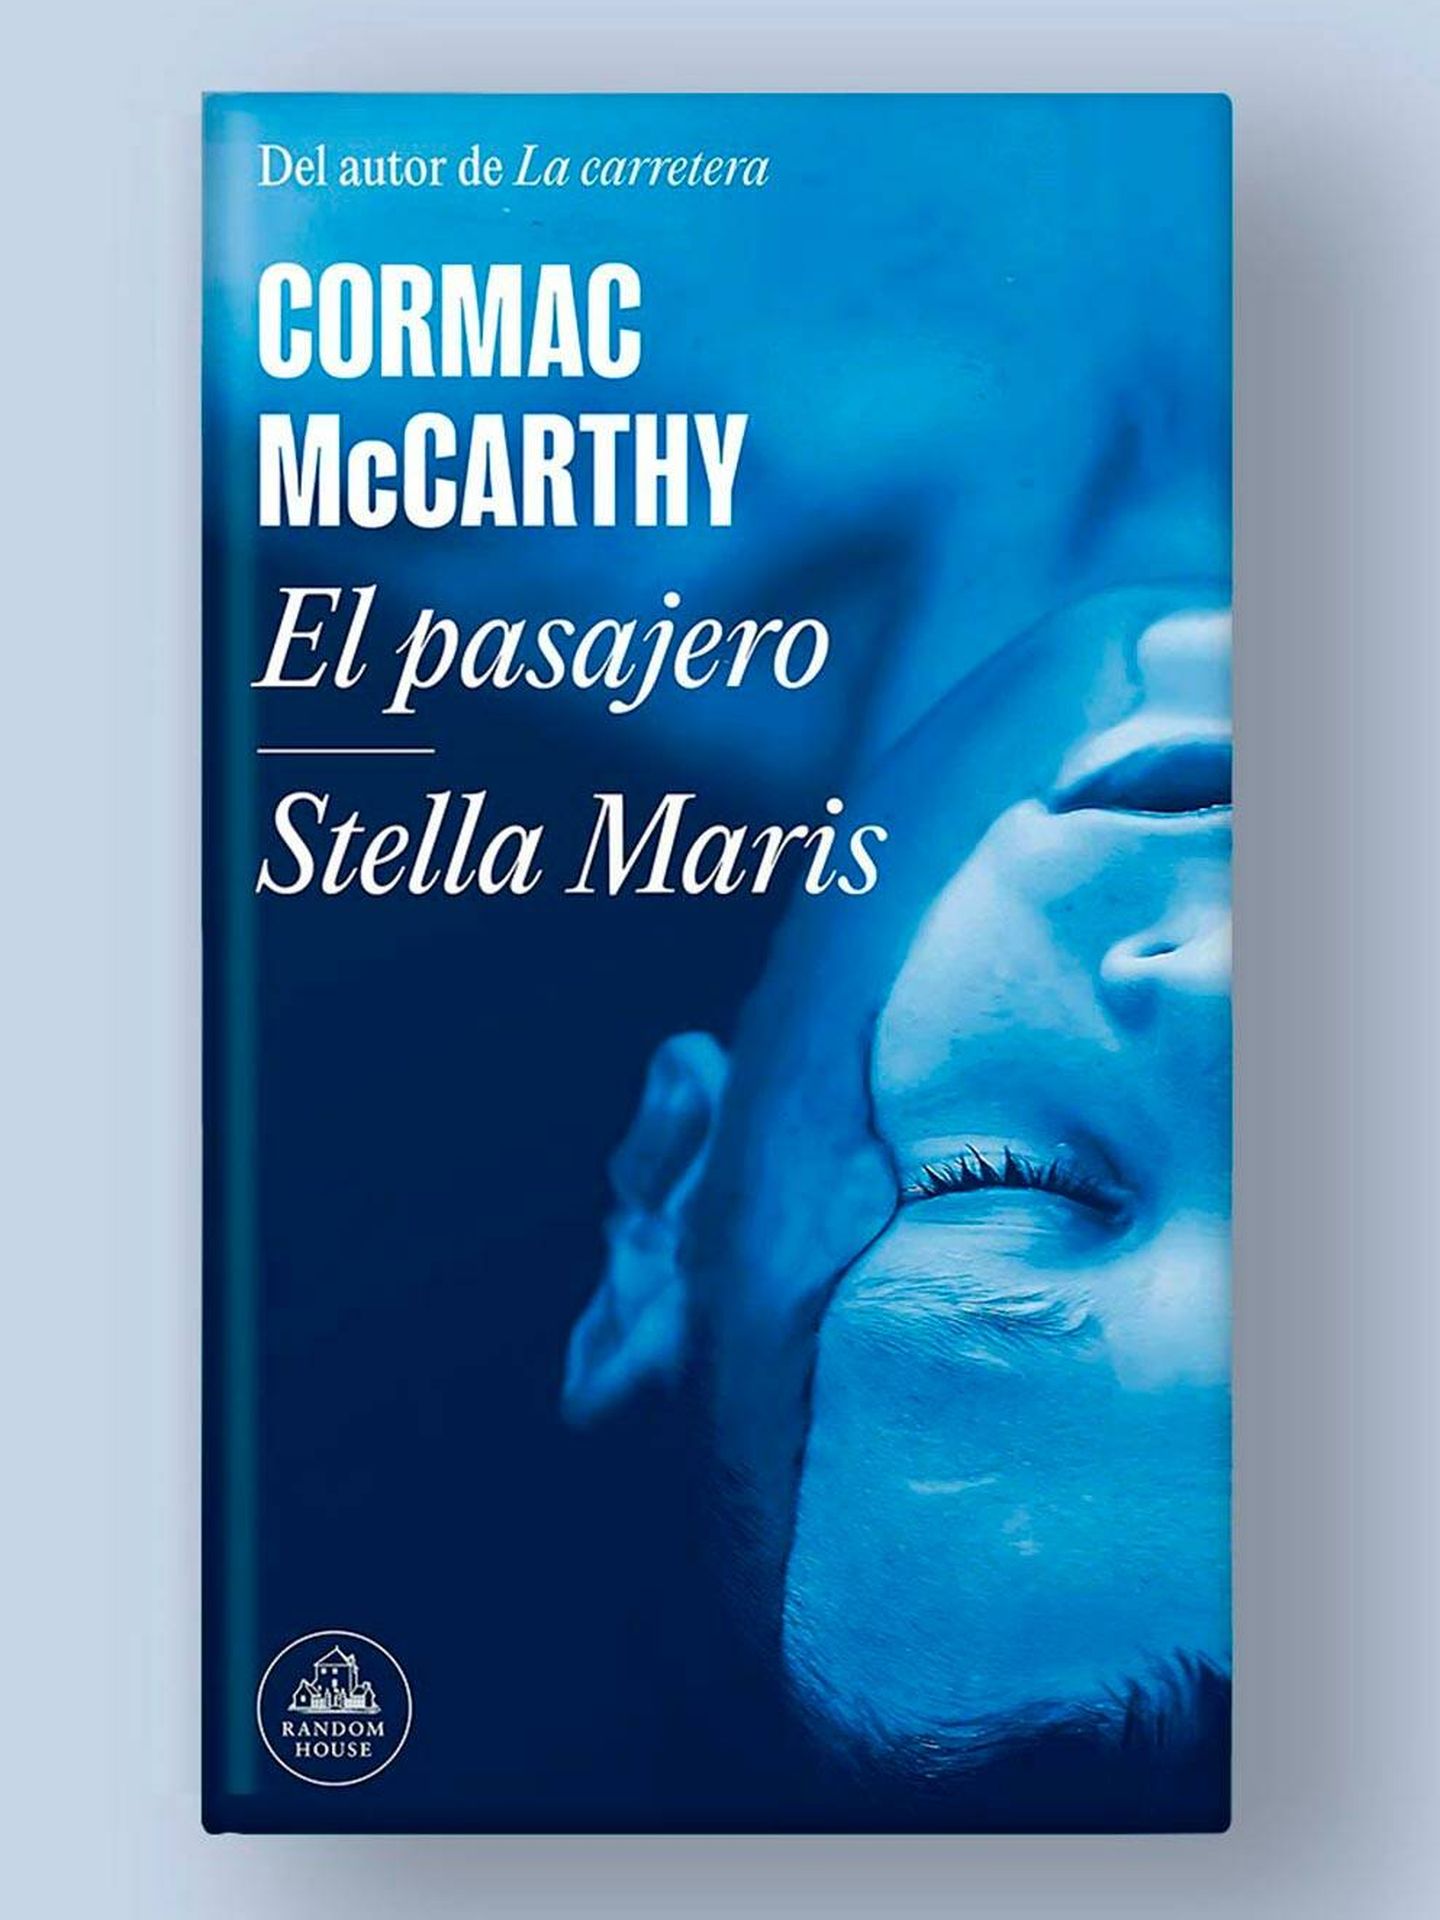 Portada del volumen que réune 'El pasajero' y 'Stella Maris', ambos de Cormac McCarthy.